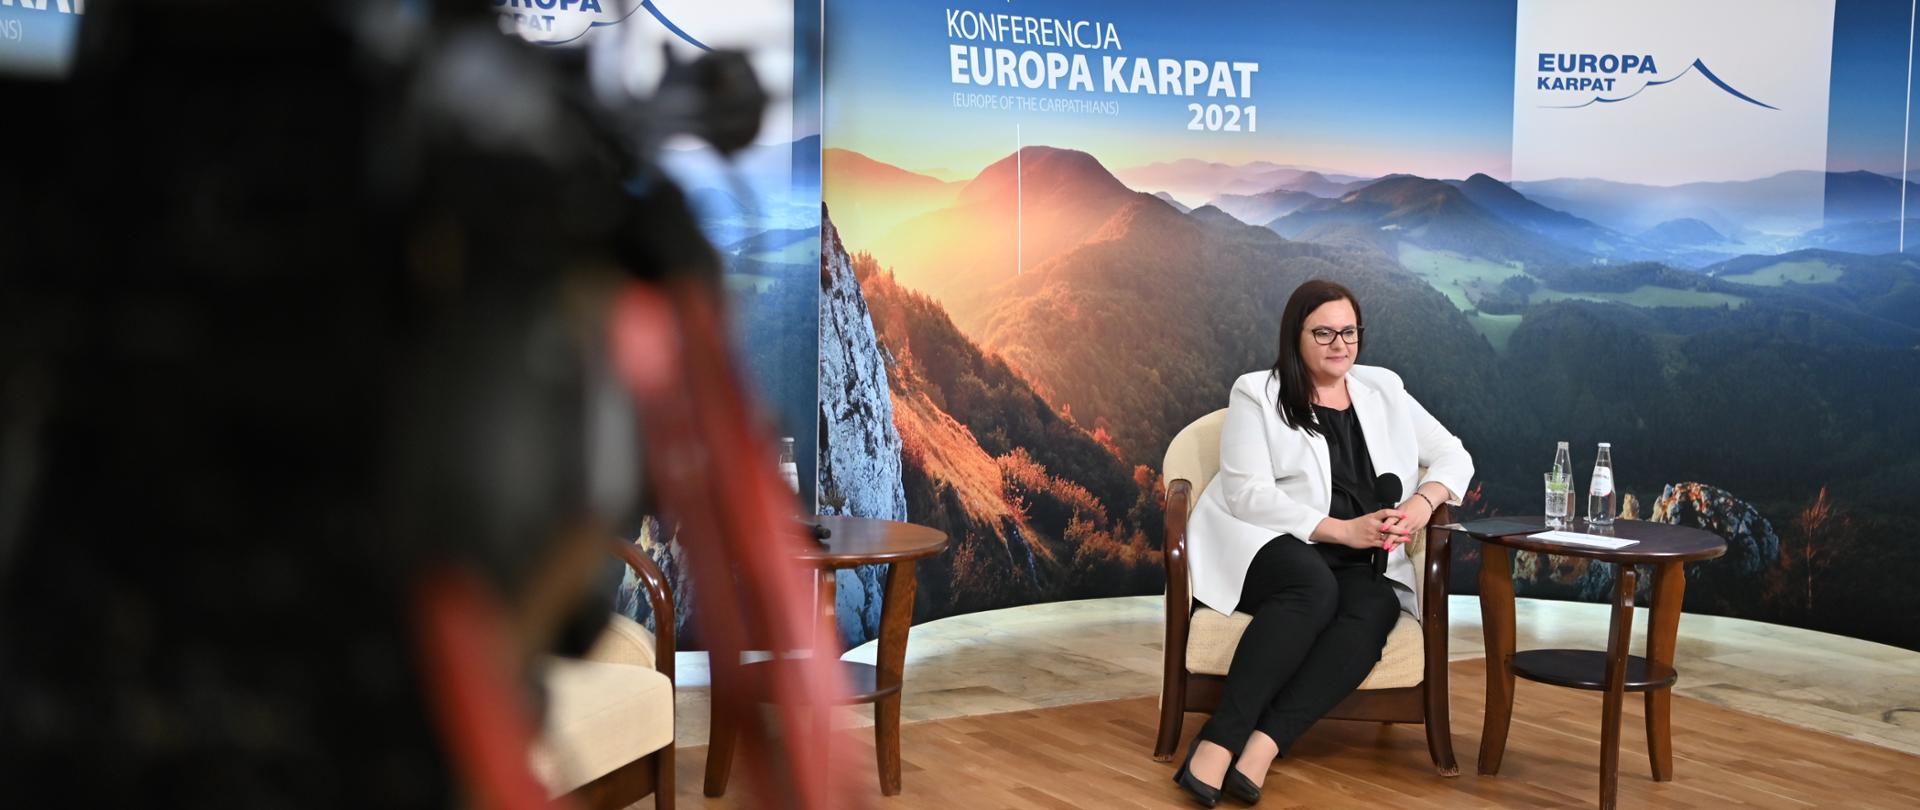 Na zdjęciu wiceminister funduszy i polityki regionalnej Małgorzata Jarosińska-Jedynak siedząca przy stoliku w trakcie konferencji. W tle ścianka Konferencji Europa Karpat.